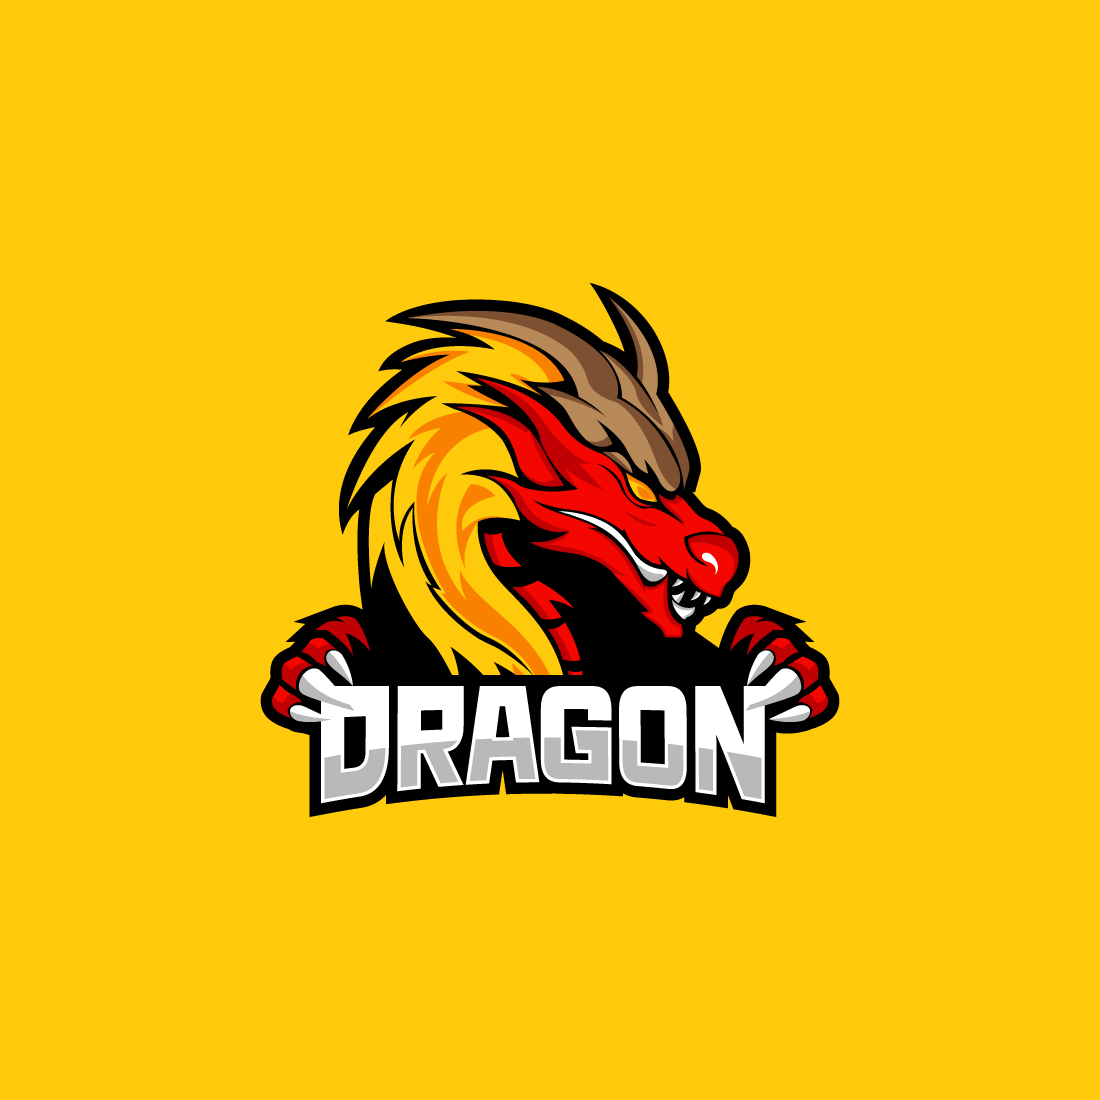 Dragon gaming mascot logo vector cover image.